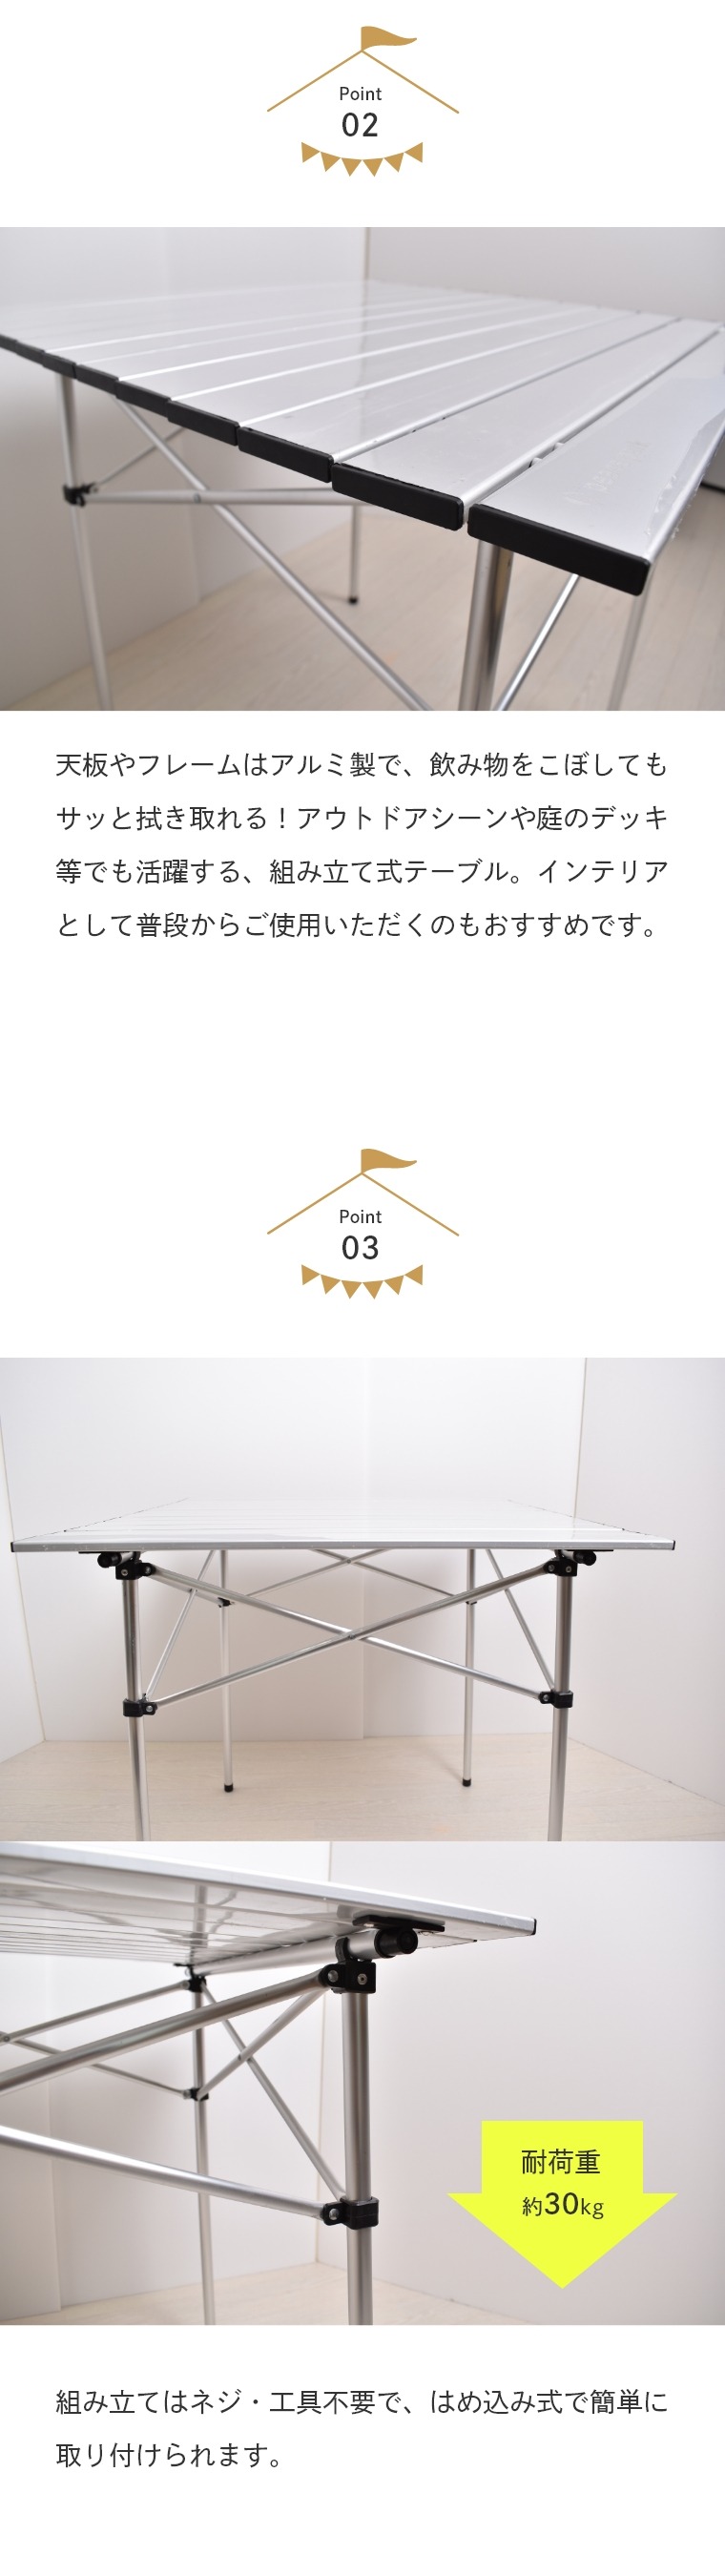 アウトドアテーブル 軽量で持ち運びやすい アルミテーブル PP0250AL